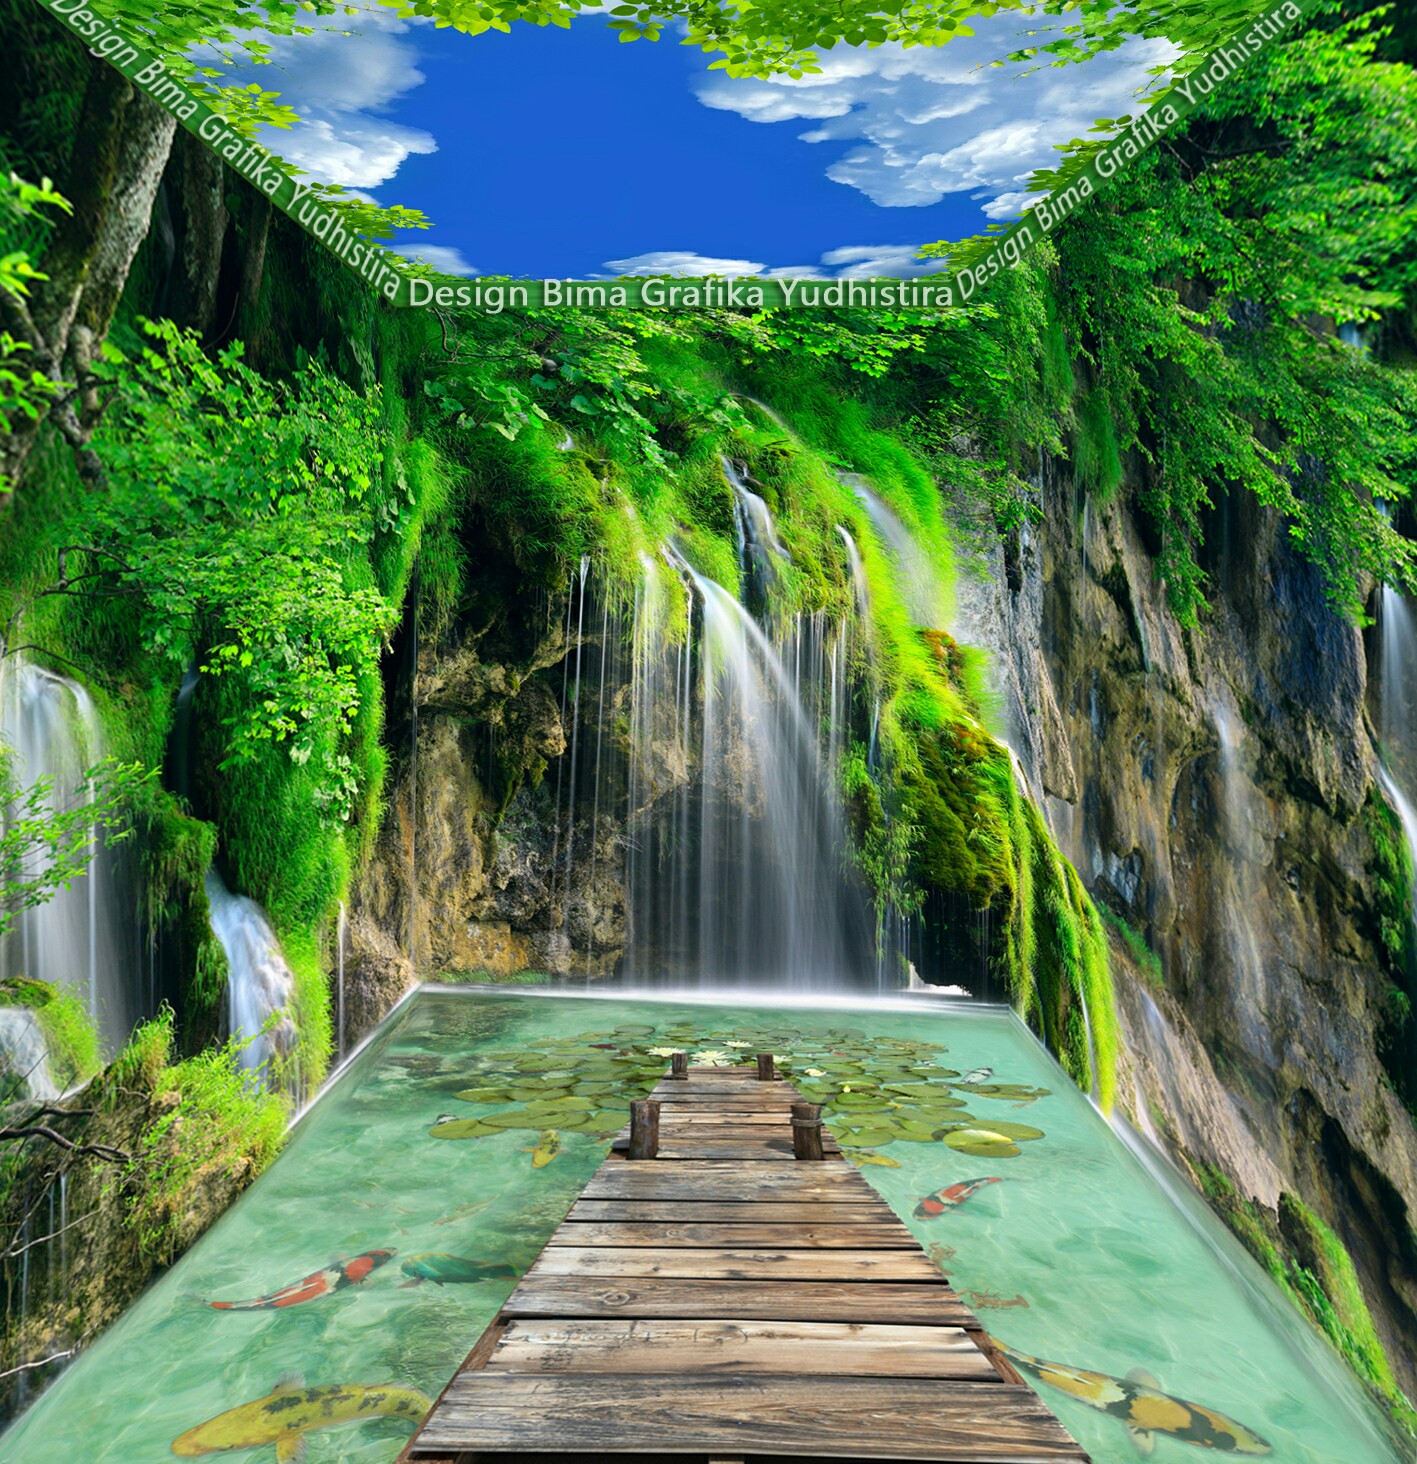 壁紙ランタイ3d,自然の風景,自然,滝,水資源,緑